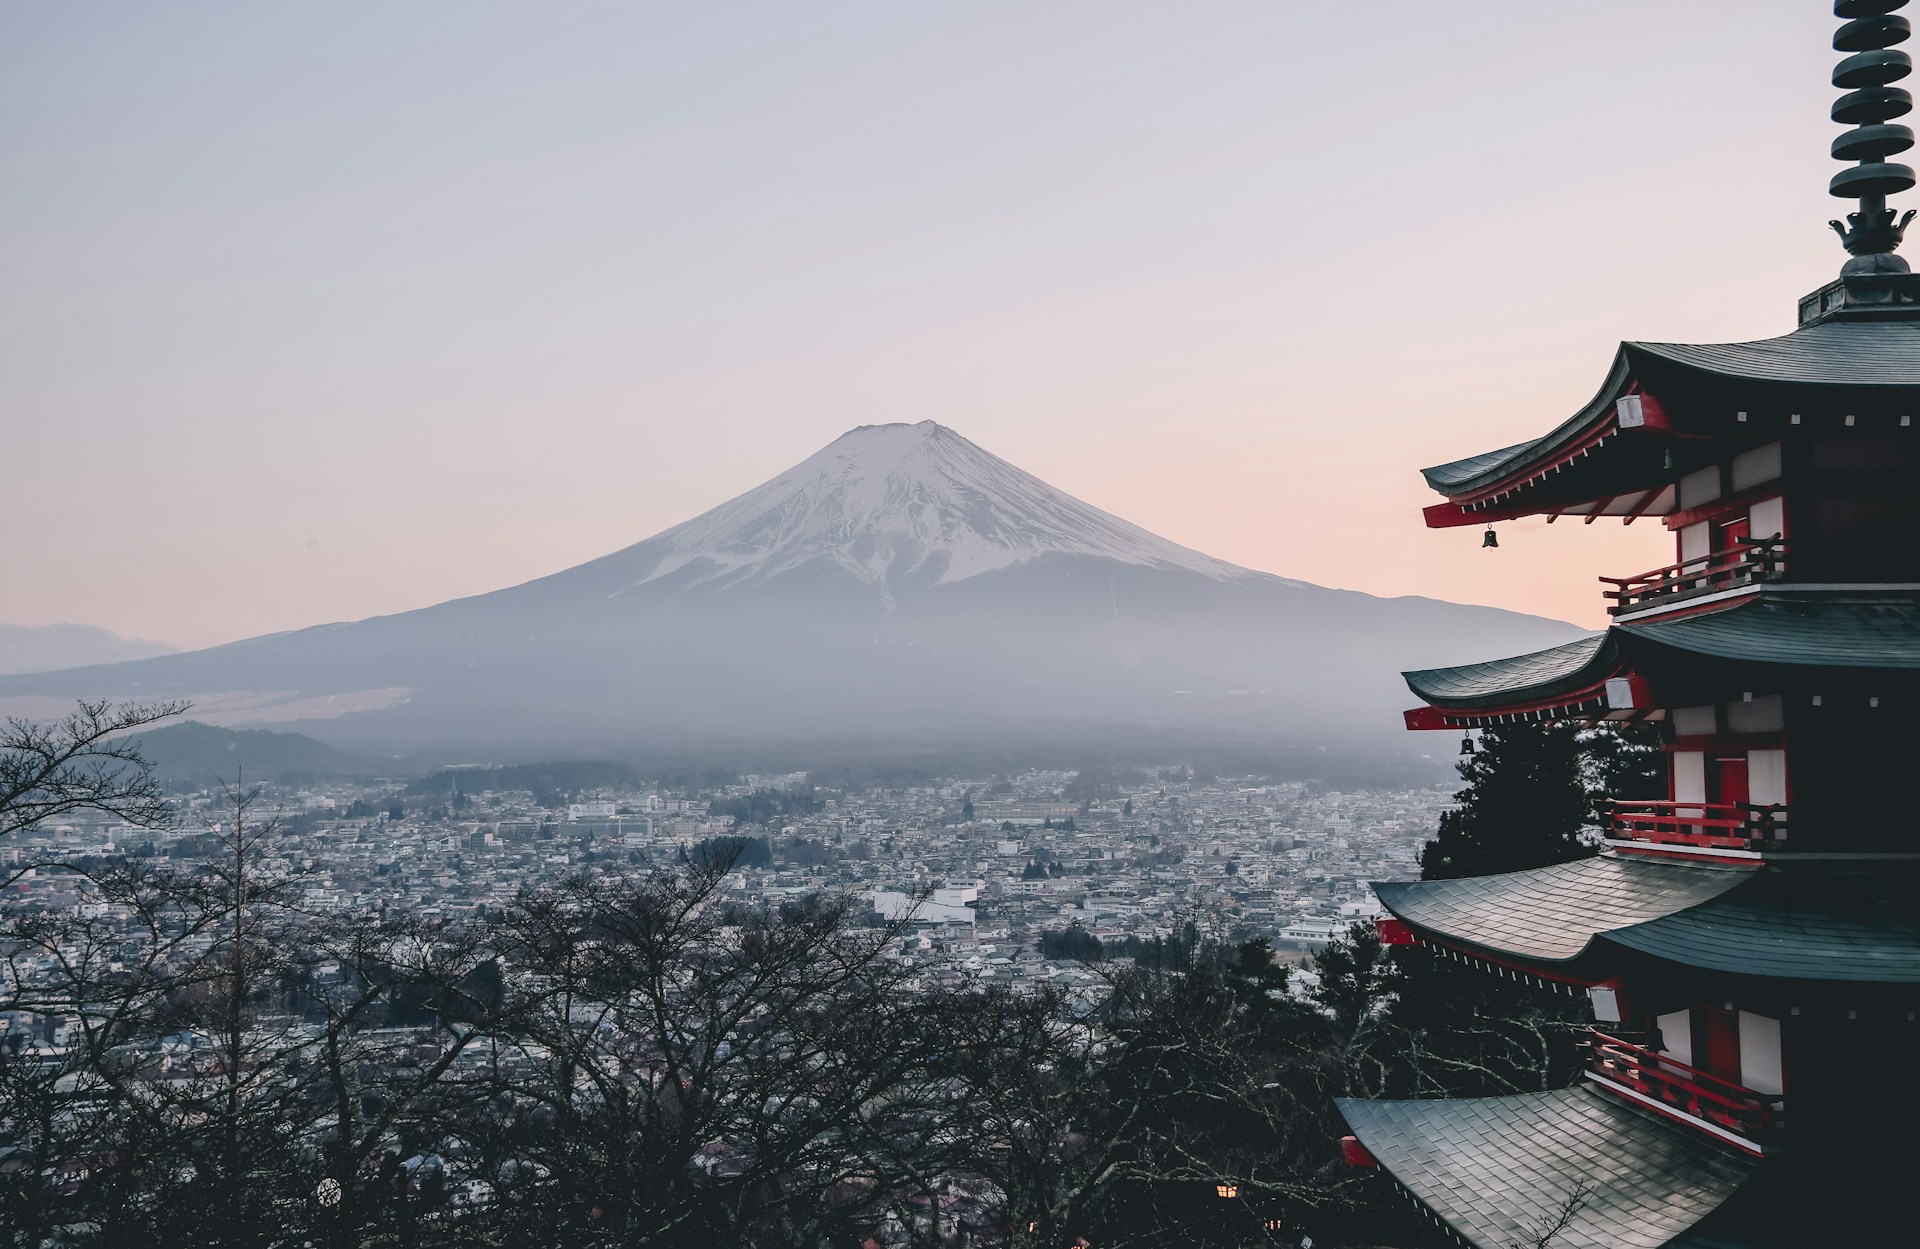 Liburan ke Jepang? Ini 3 Tempat Wisata di Jepang yang Wajib Dikunjungi 